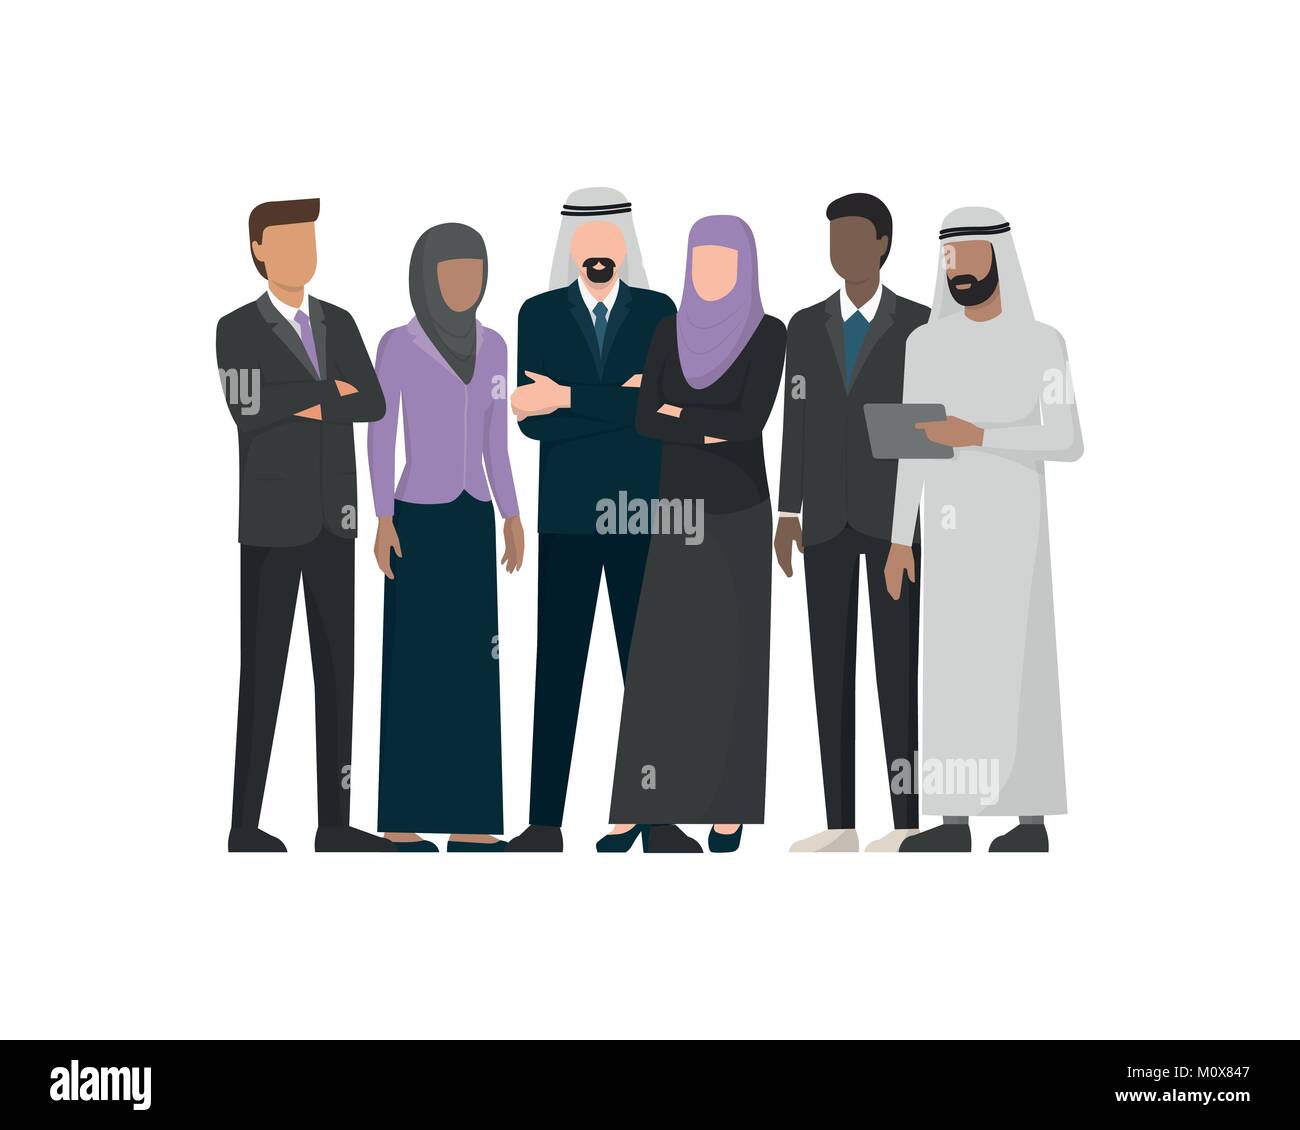 Muslimisch-arabischen Geschäftsleuten, international Business Konzept Stock Vektor